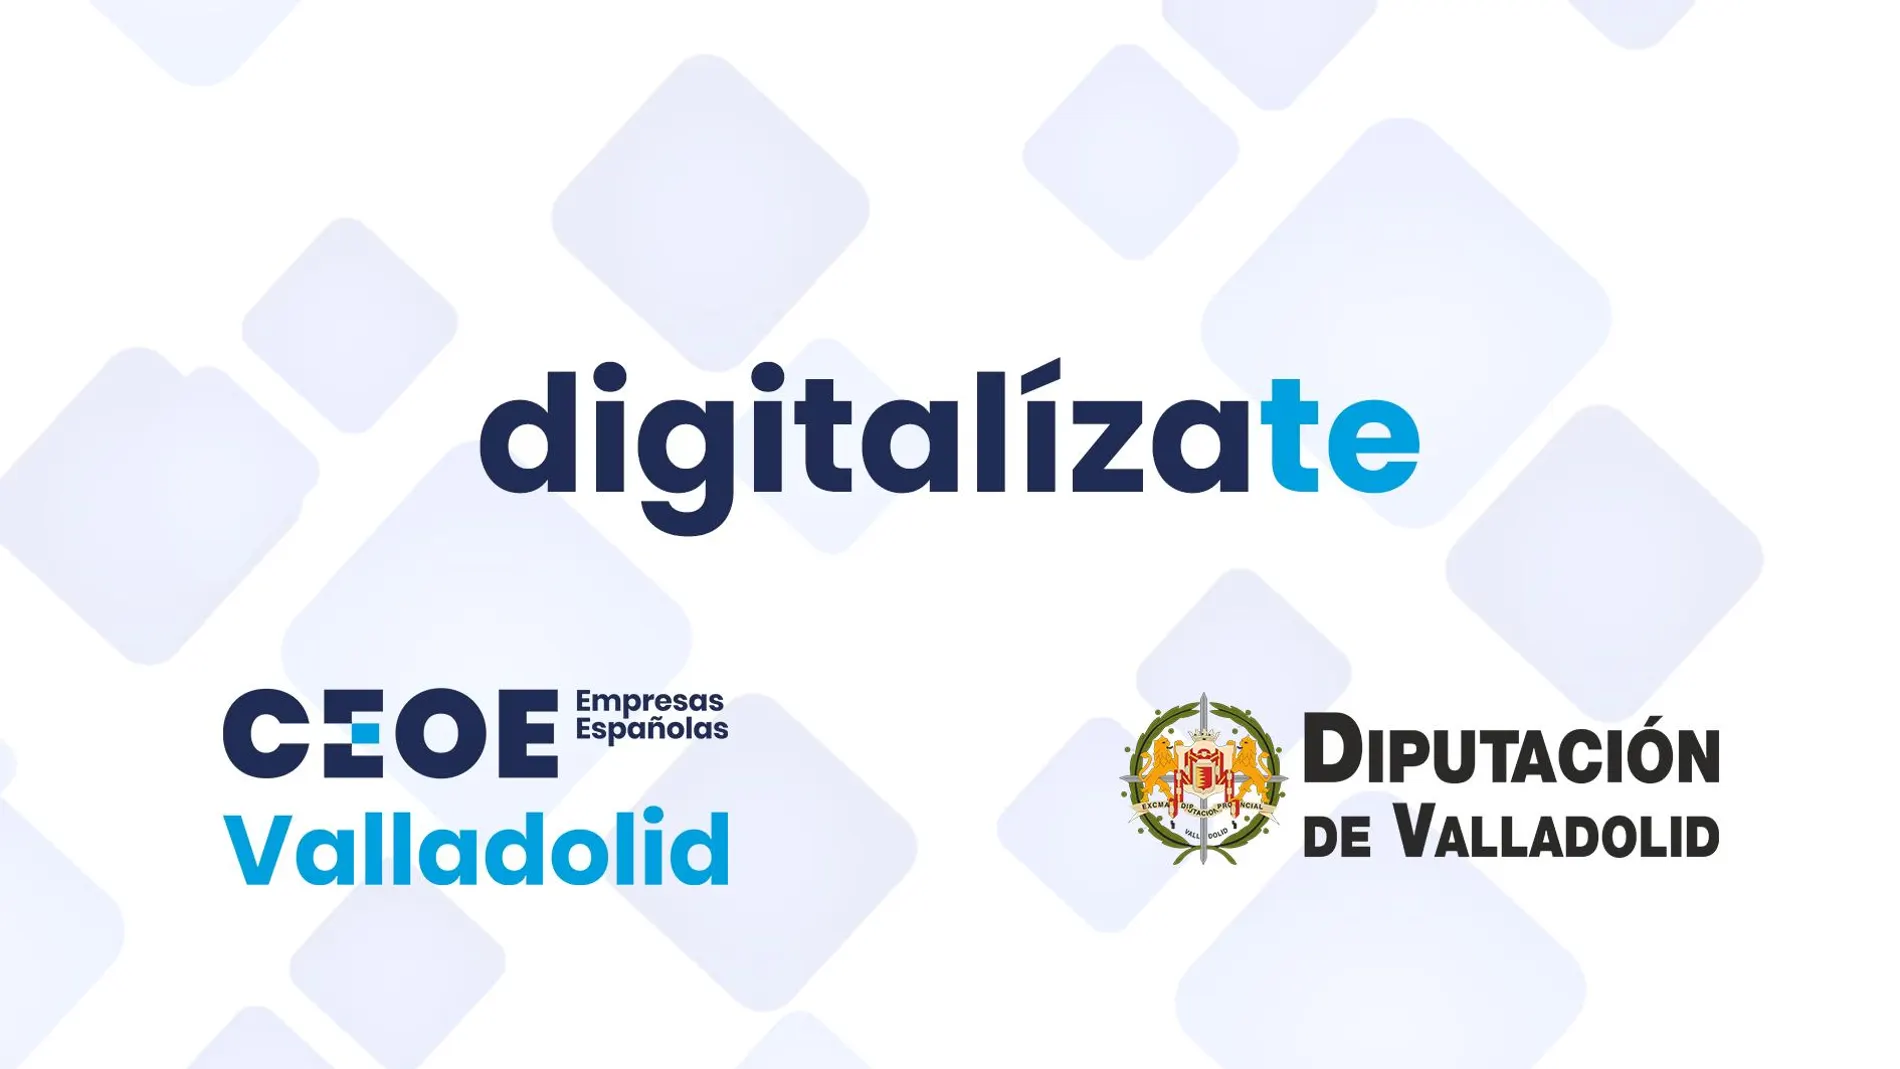 Proyecto "Digitalízate" de CEOE Valladolid y la Diputación Provincial